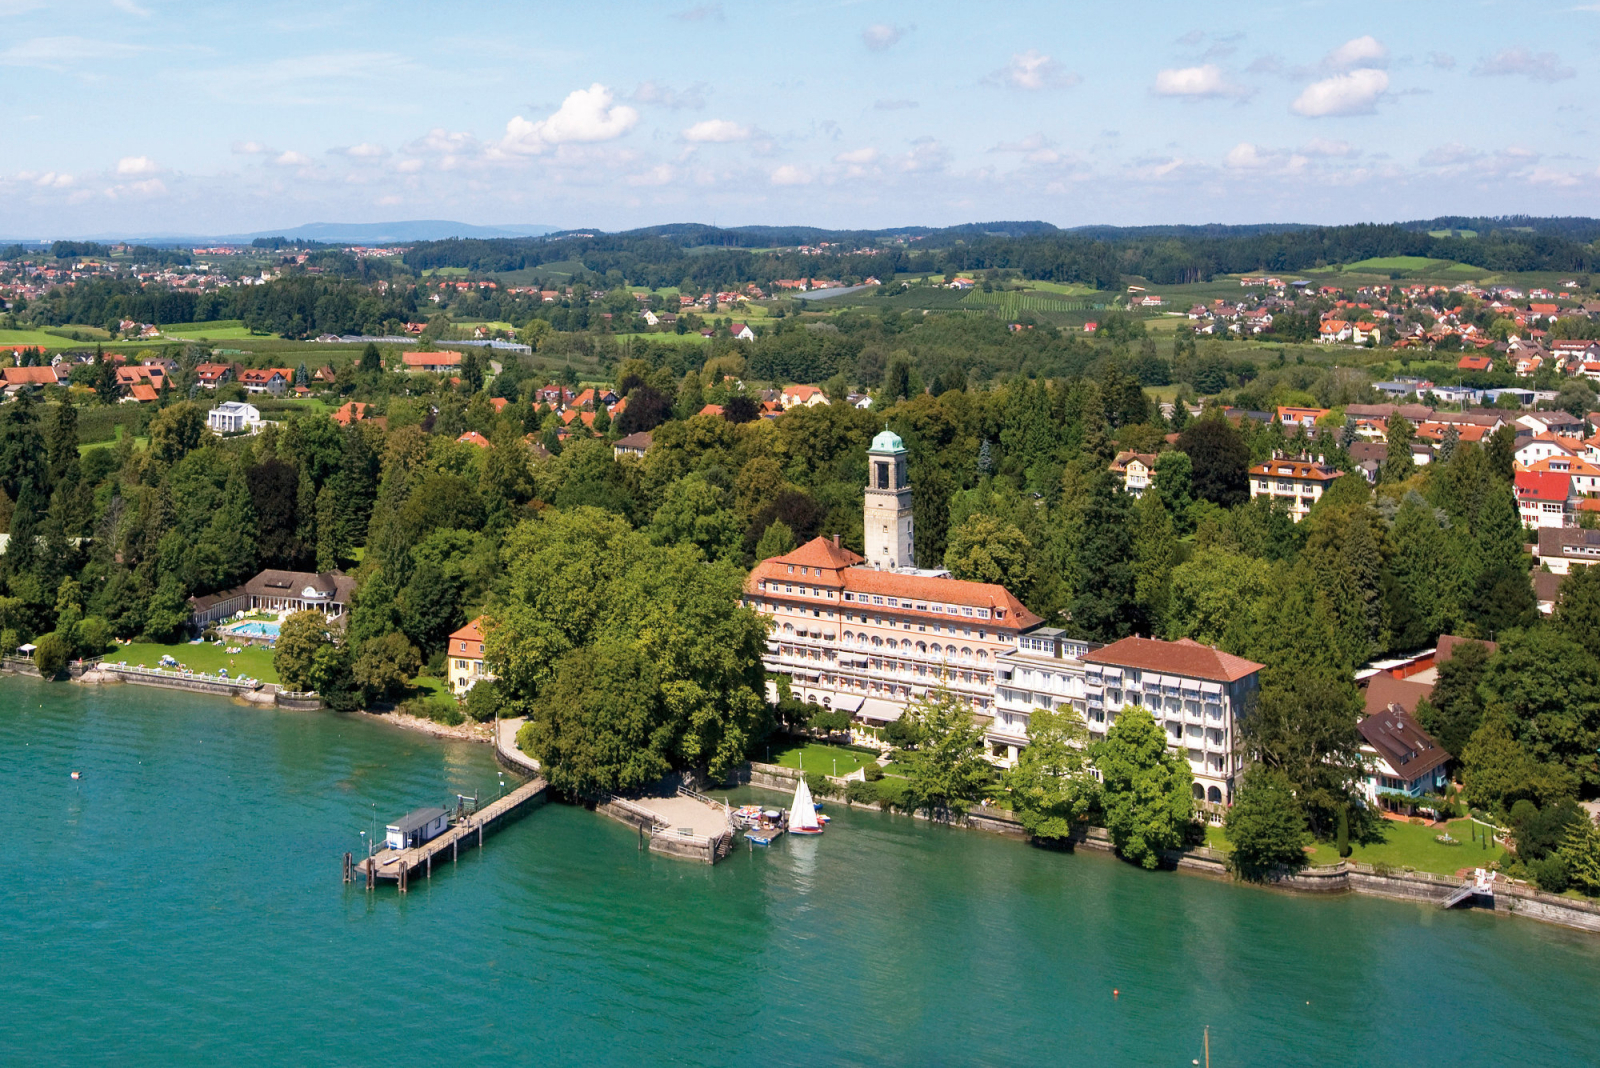 Hotel Bad Schachen am Bodensee von oben betrachtet